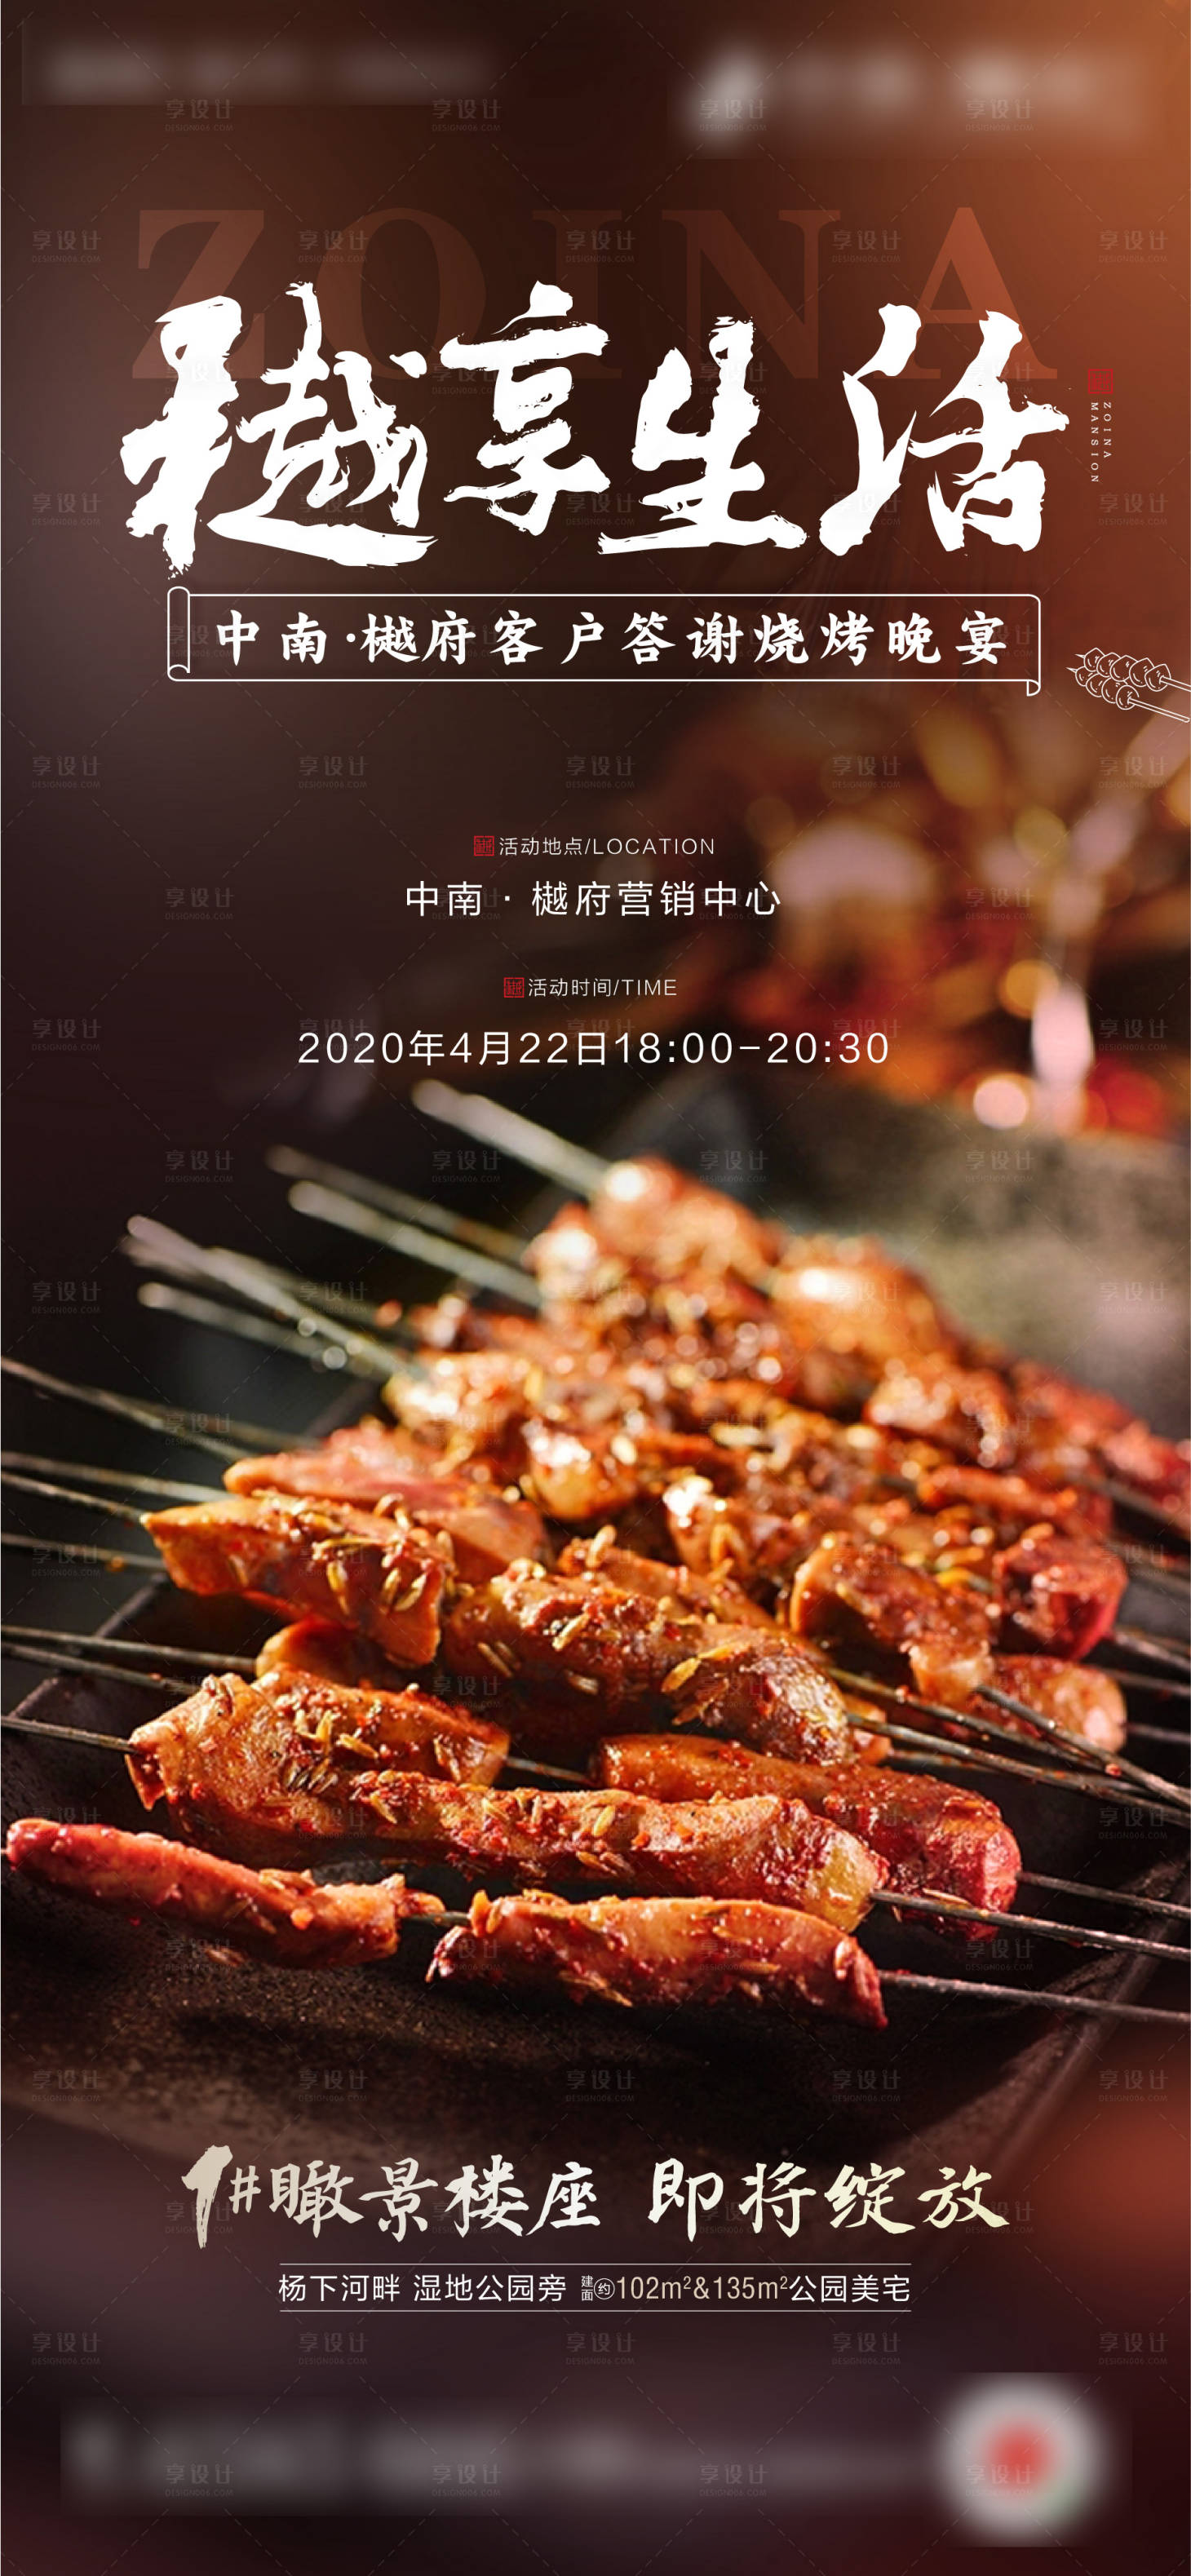 房地产烧烤晚宴活动海报其他色psd广告设计作品素材